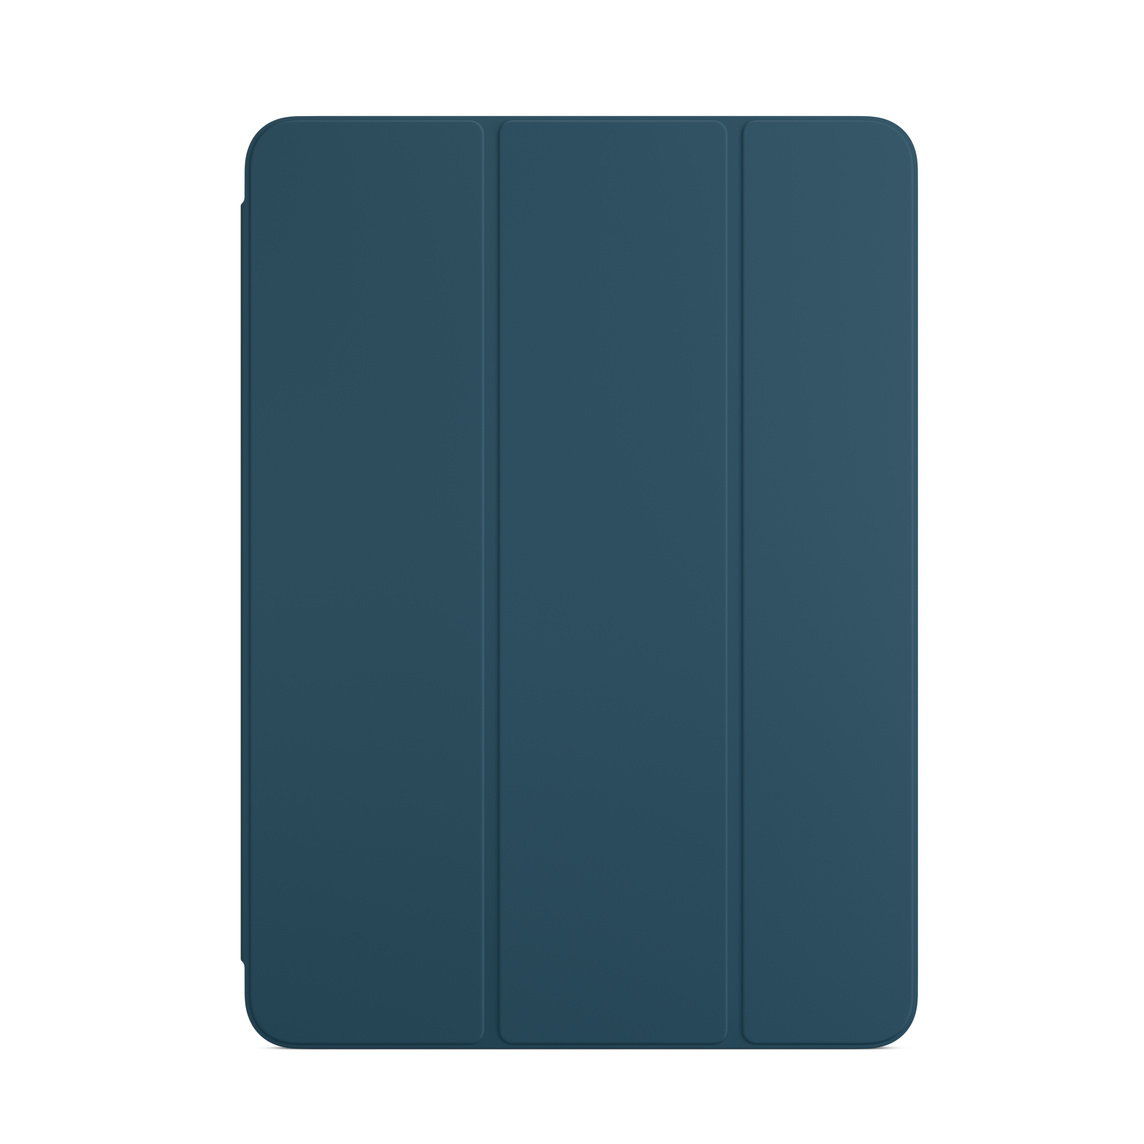 Smart Folio voor iPad Air in marineblauw.